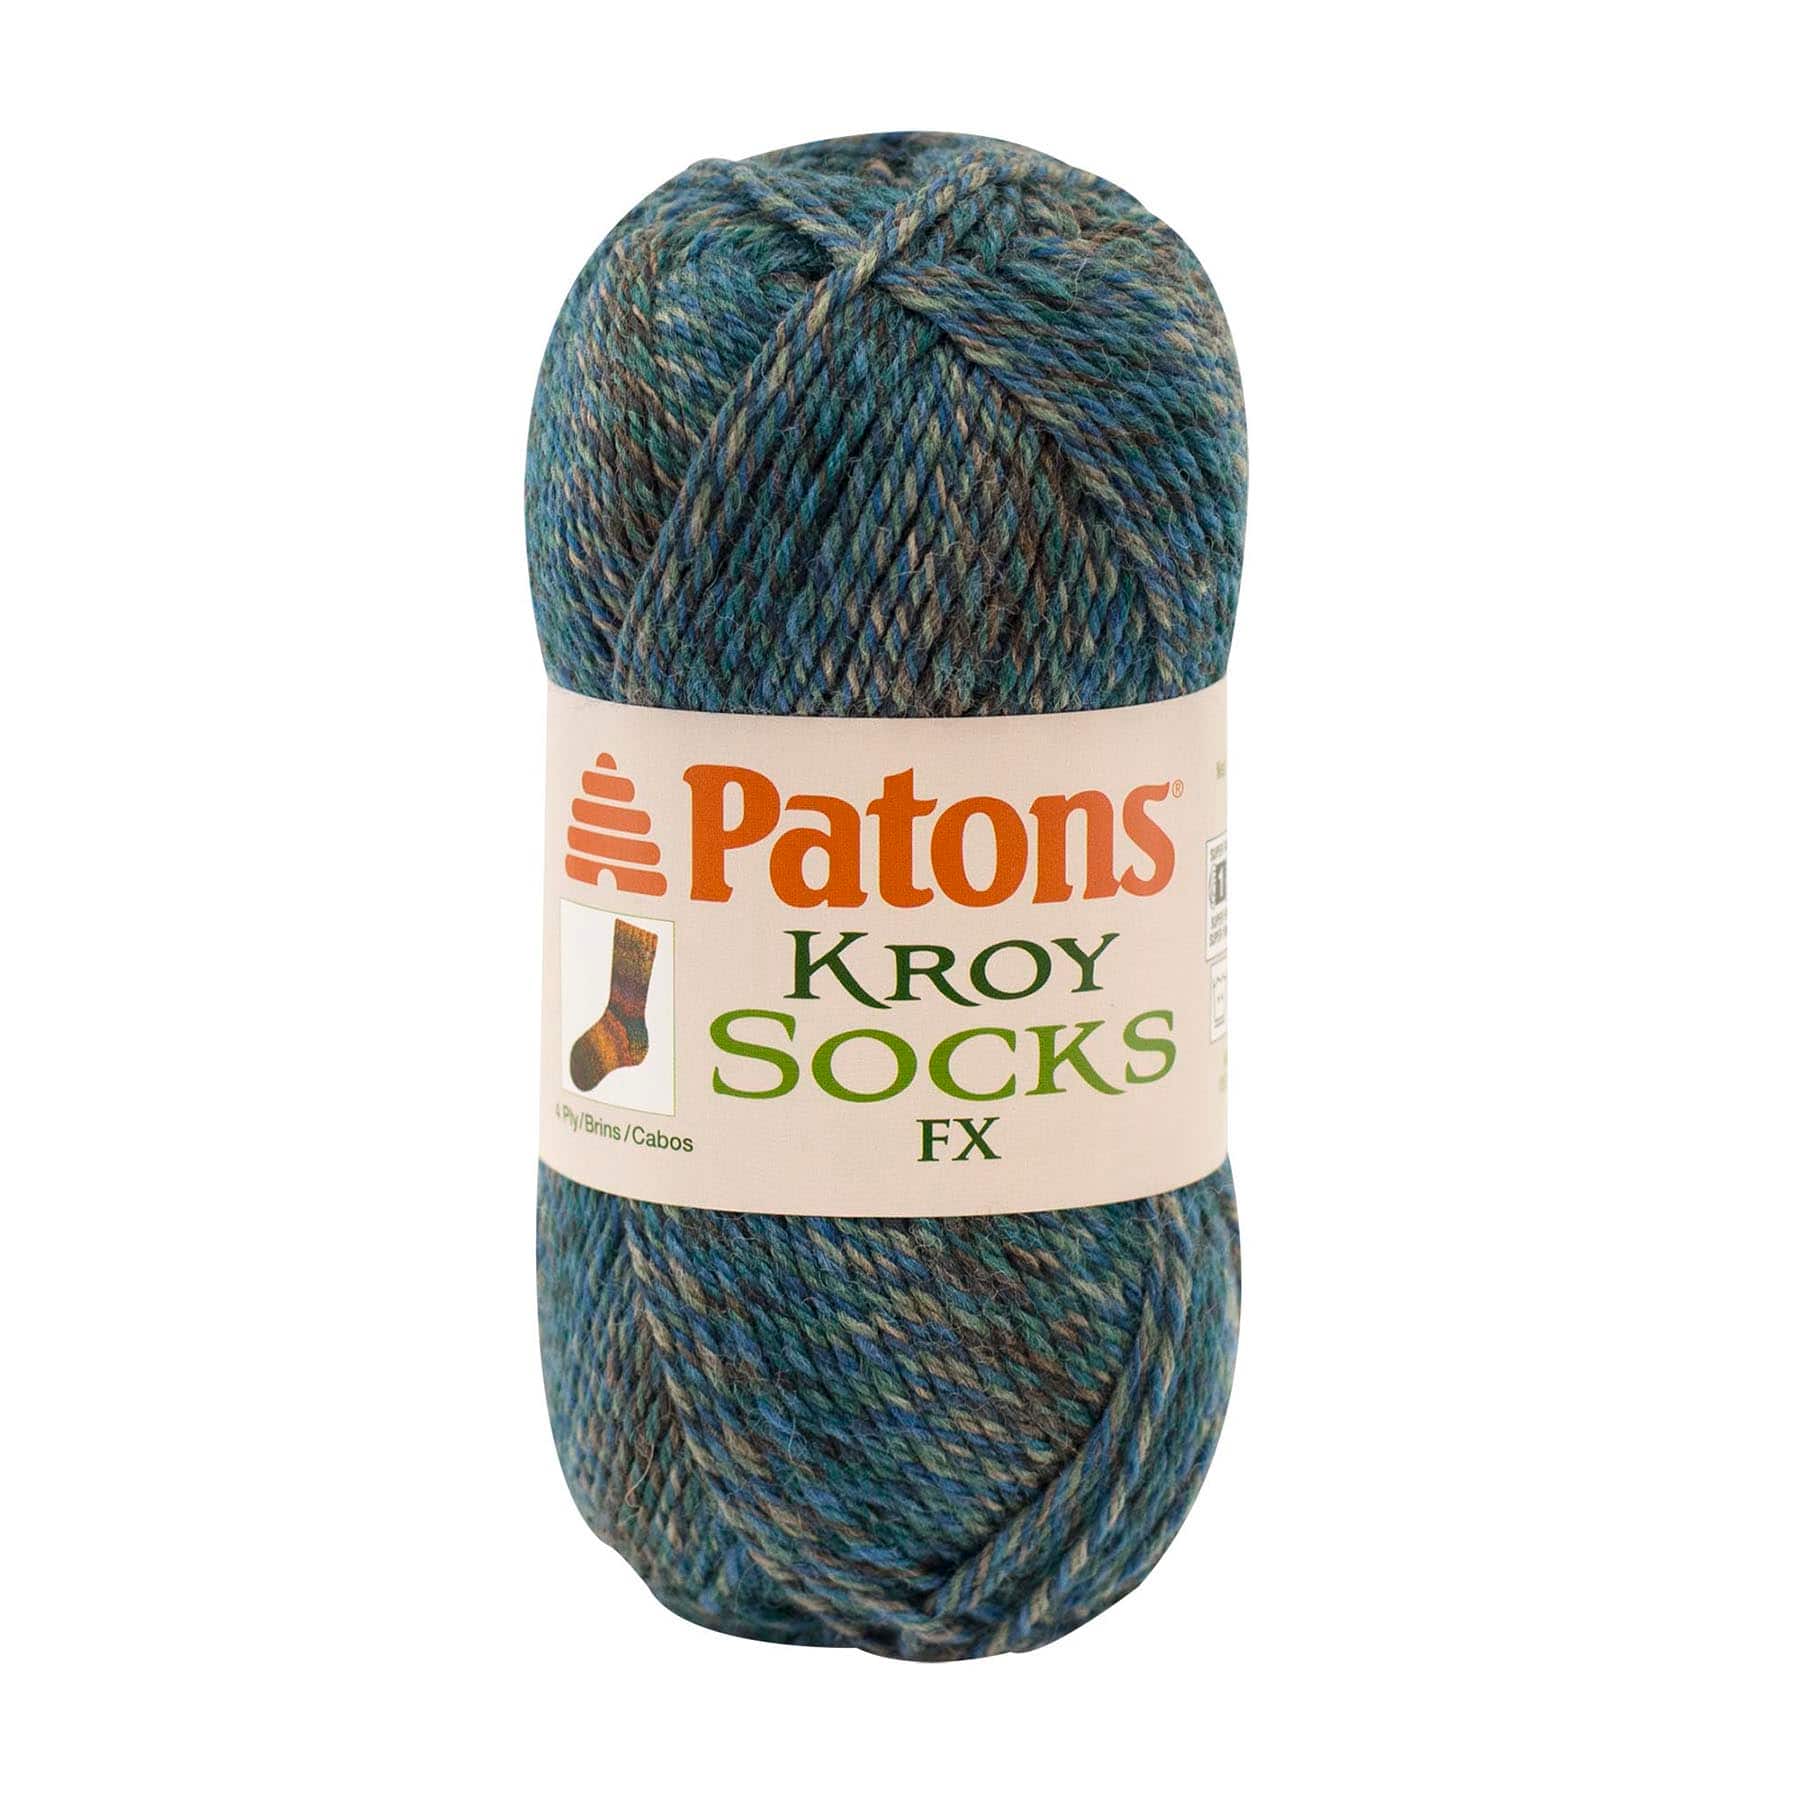 Patons&#xAE; Kroy Socks FX&#xAE; Yarn